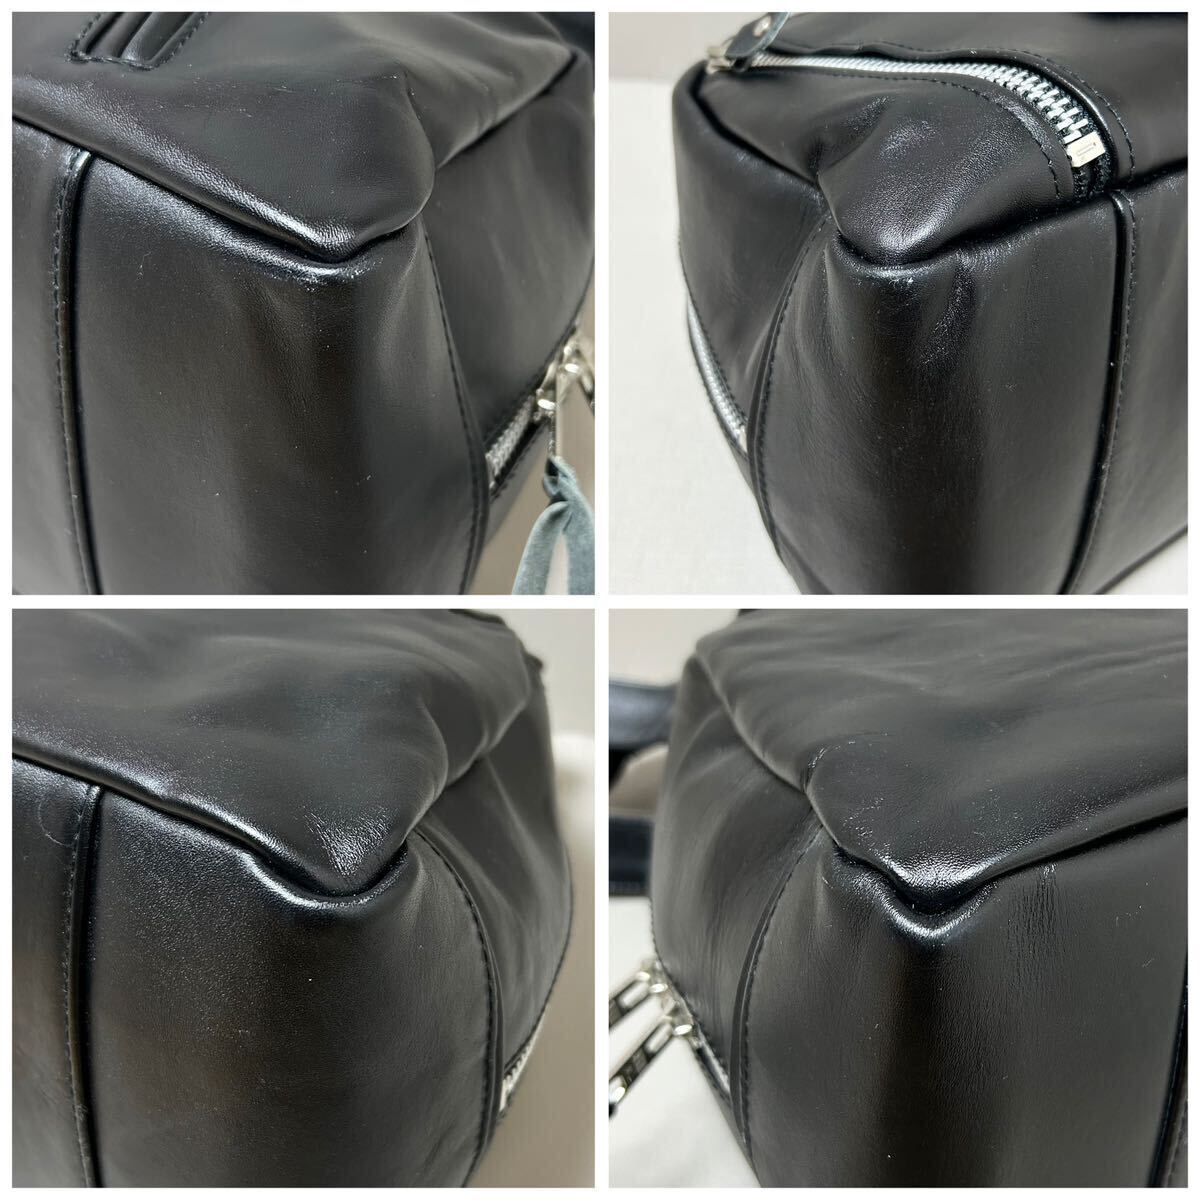 [ превосходный товар ]Schott Schott RIDERS BOSTON BAG Rider's сумка "Boston bag" большая сумка мужской бизнес A4 возможно плечо .. кожа телячья кожа натуральная кожа черный 